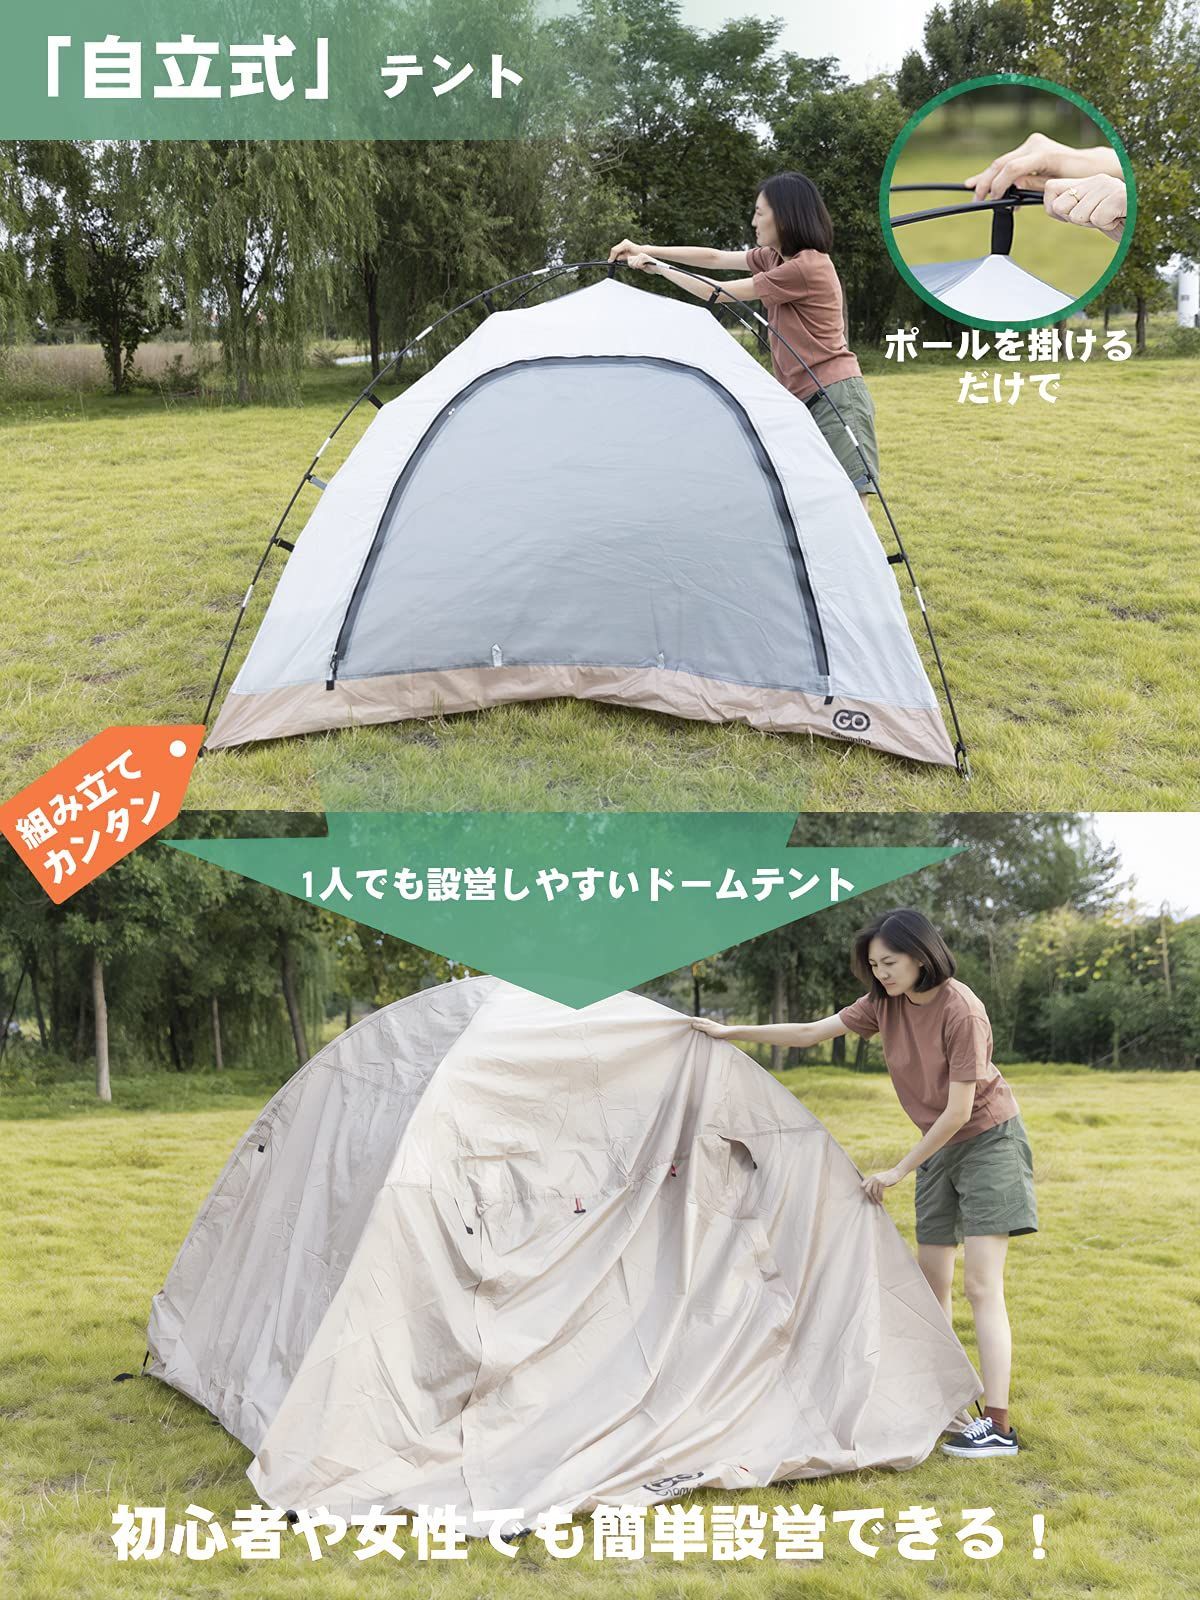 テント ツーリングドーム 二重層 アウトドア キャンプ 防風 防水 通気性